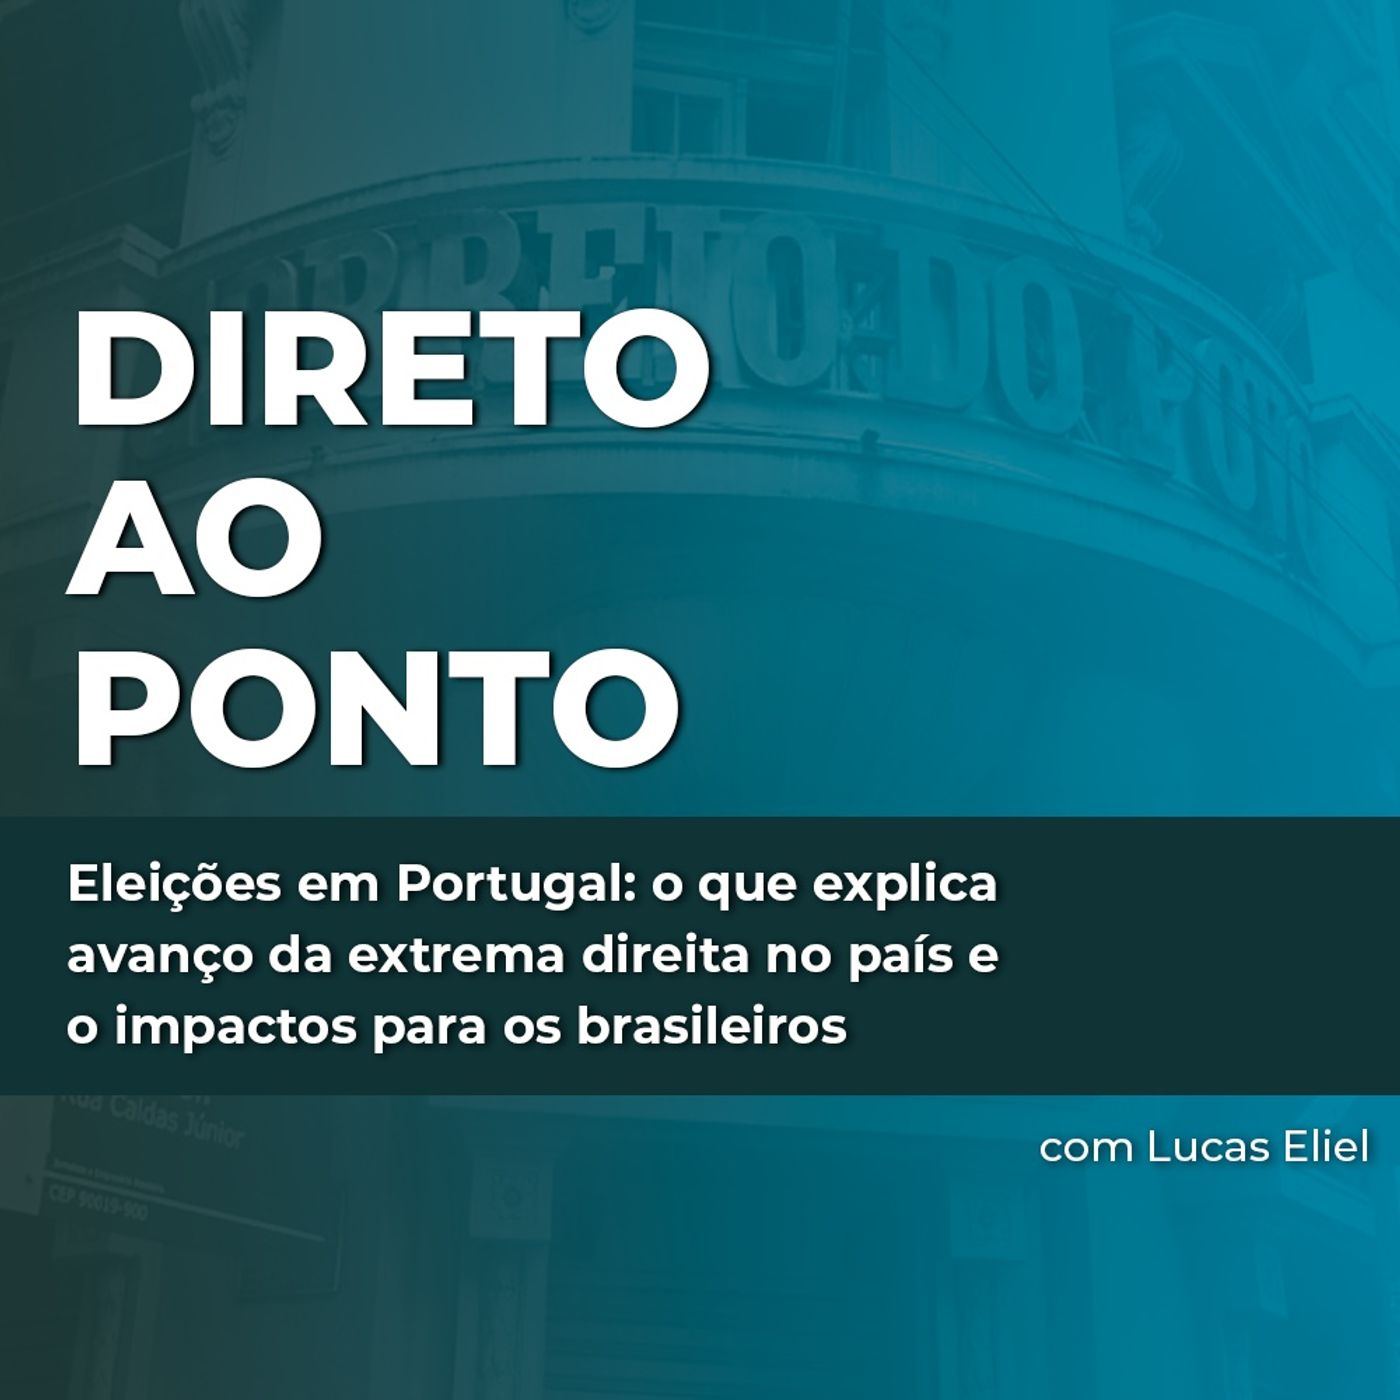 Eleições em Portugal: o que explica avanço da extrema direita no país e o impactos para os brasileiros